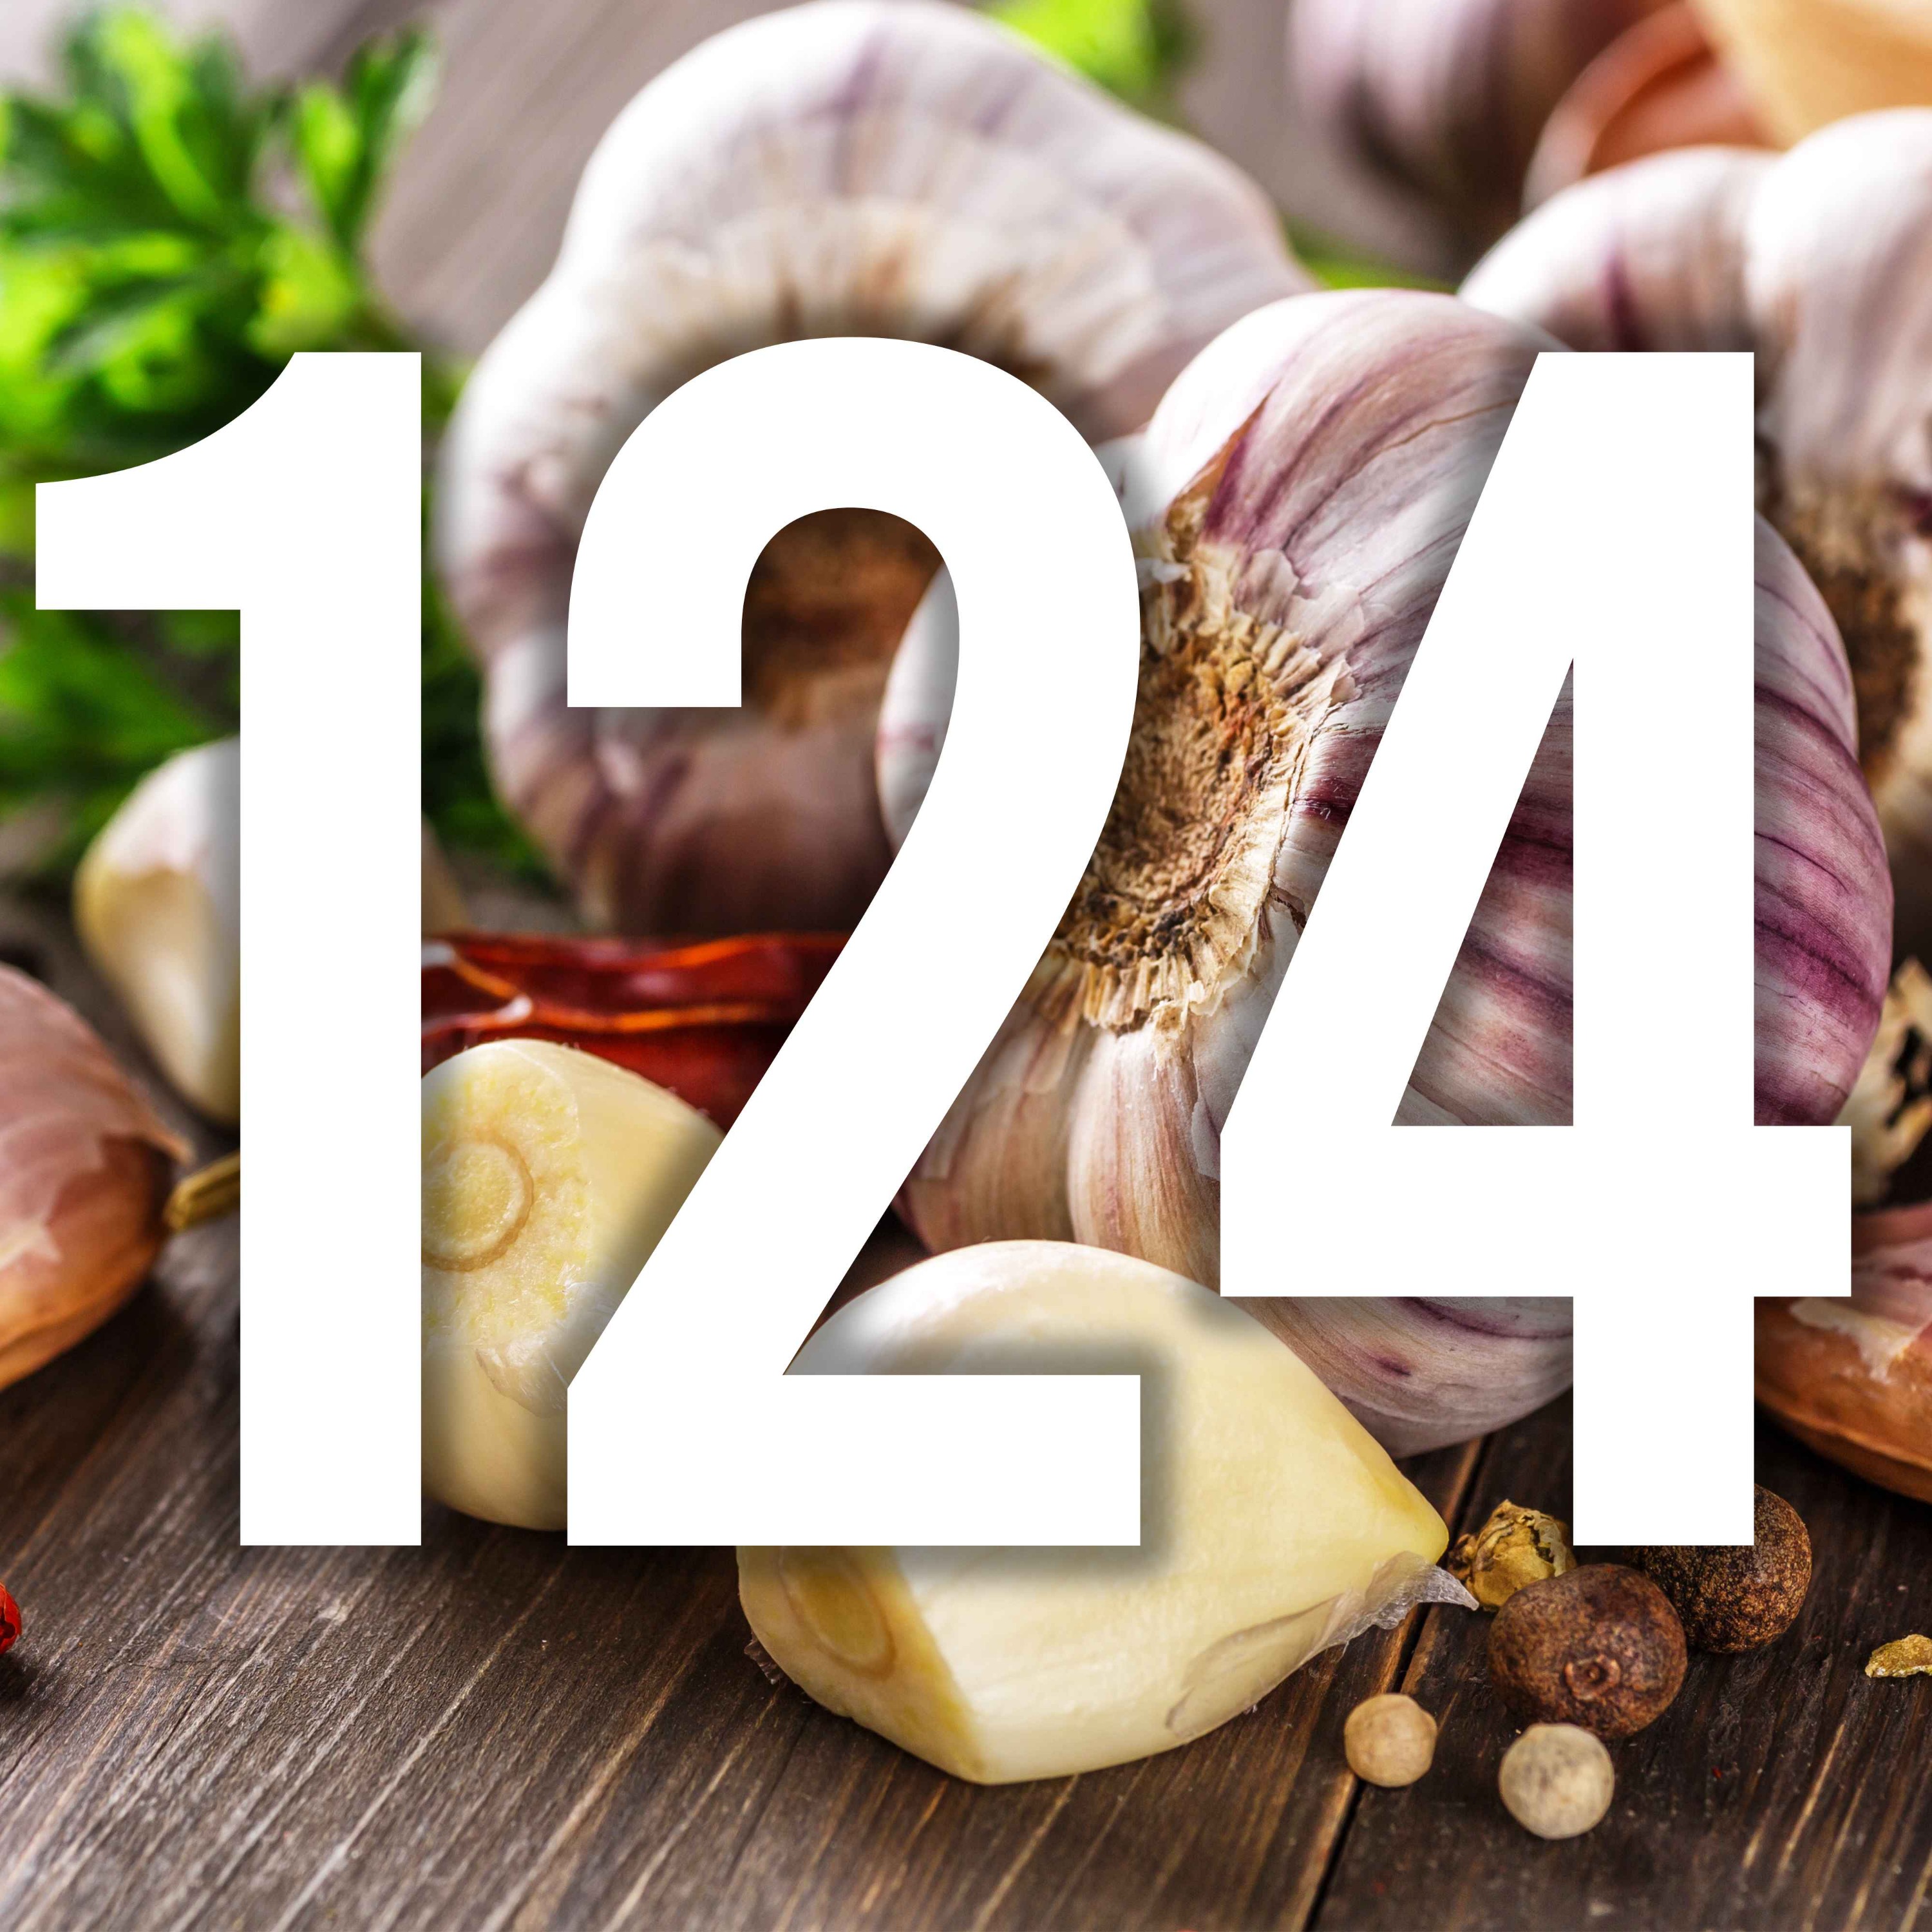 124 - Just wild about garlic